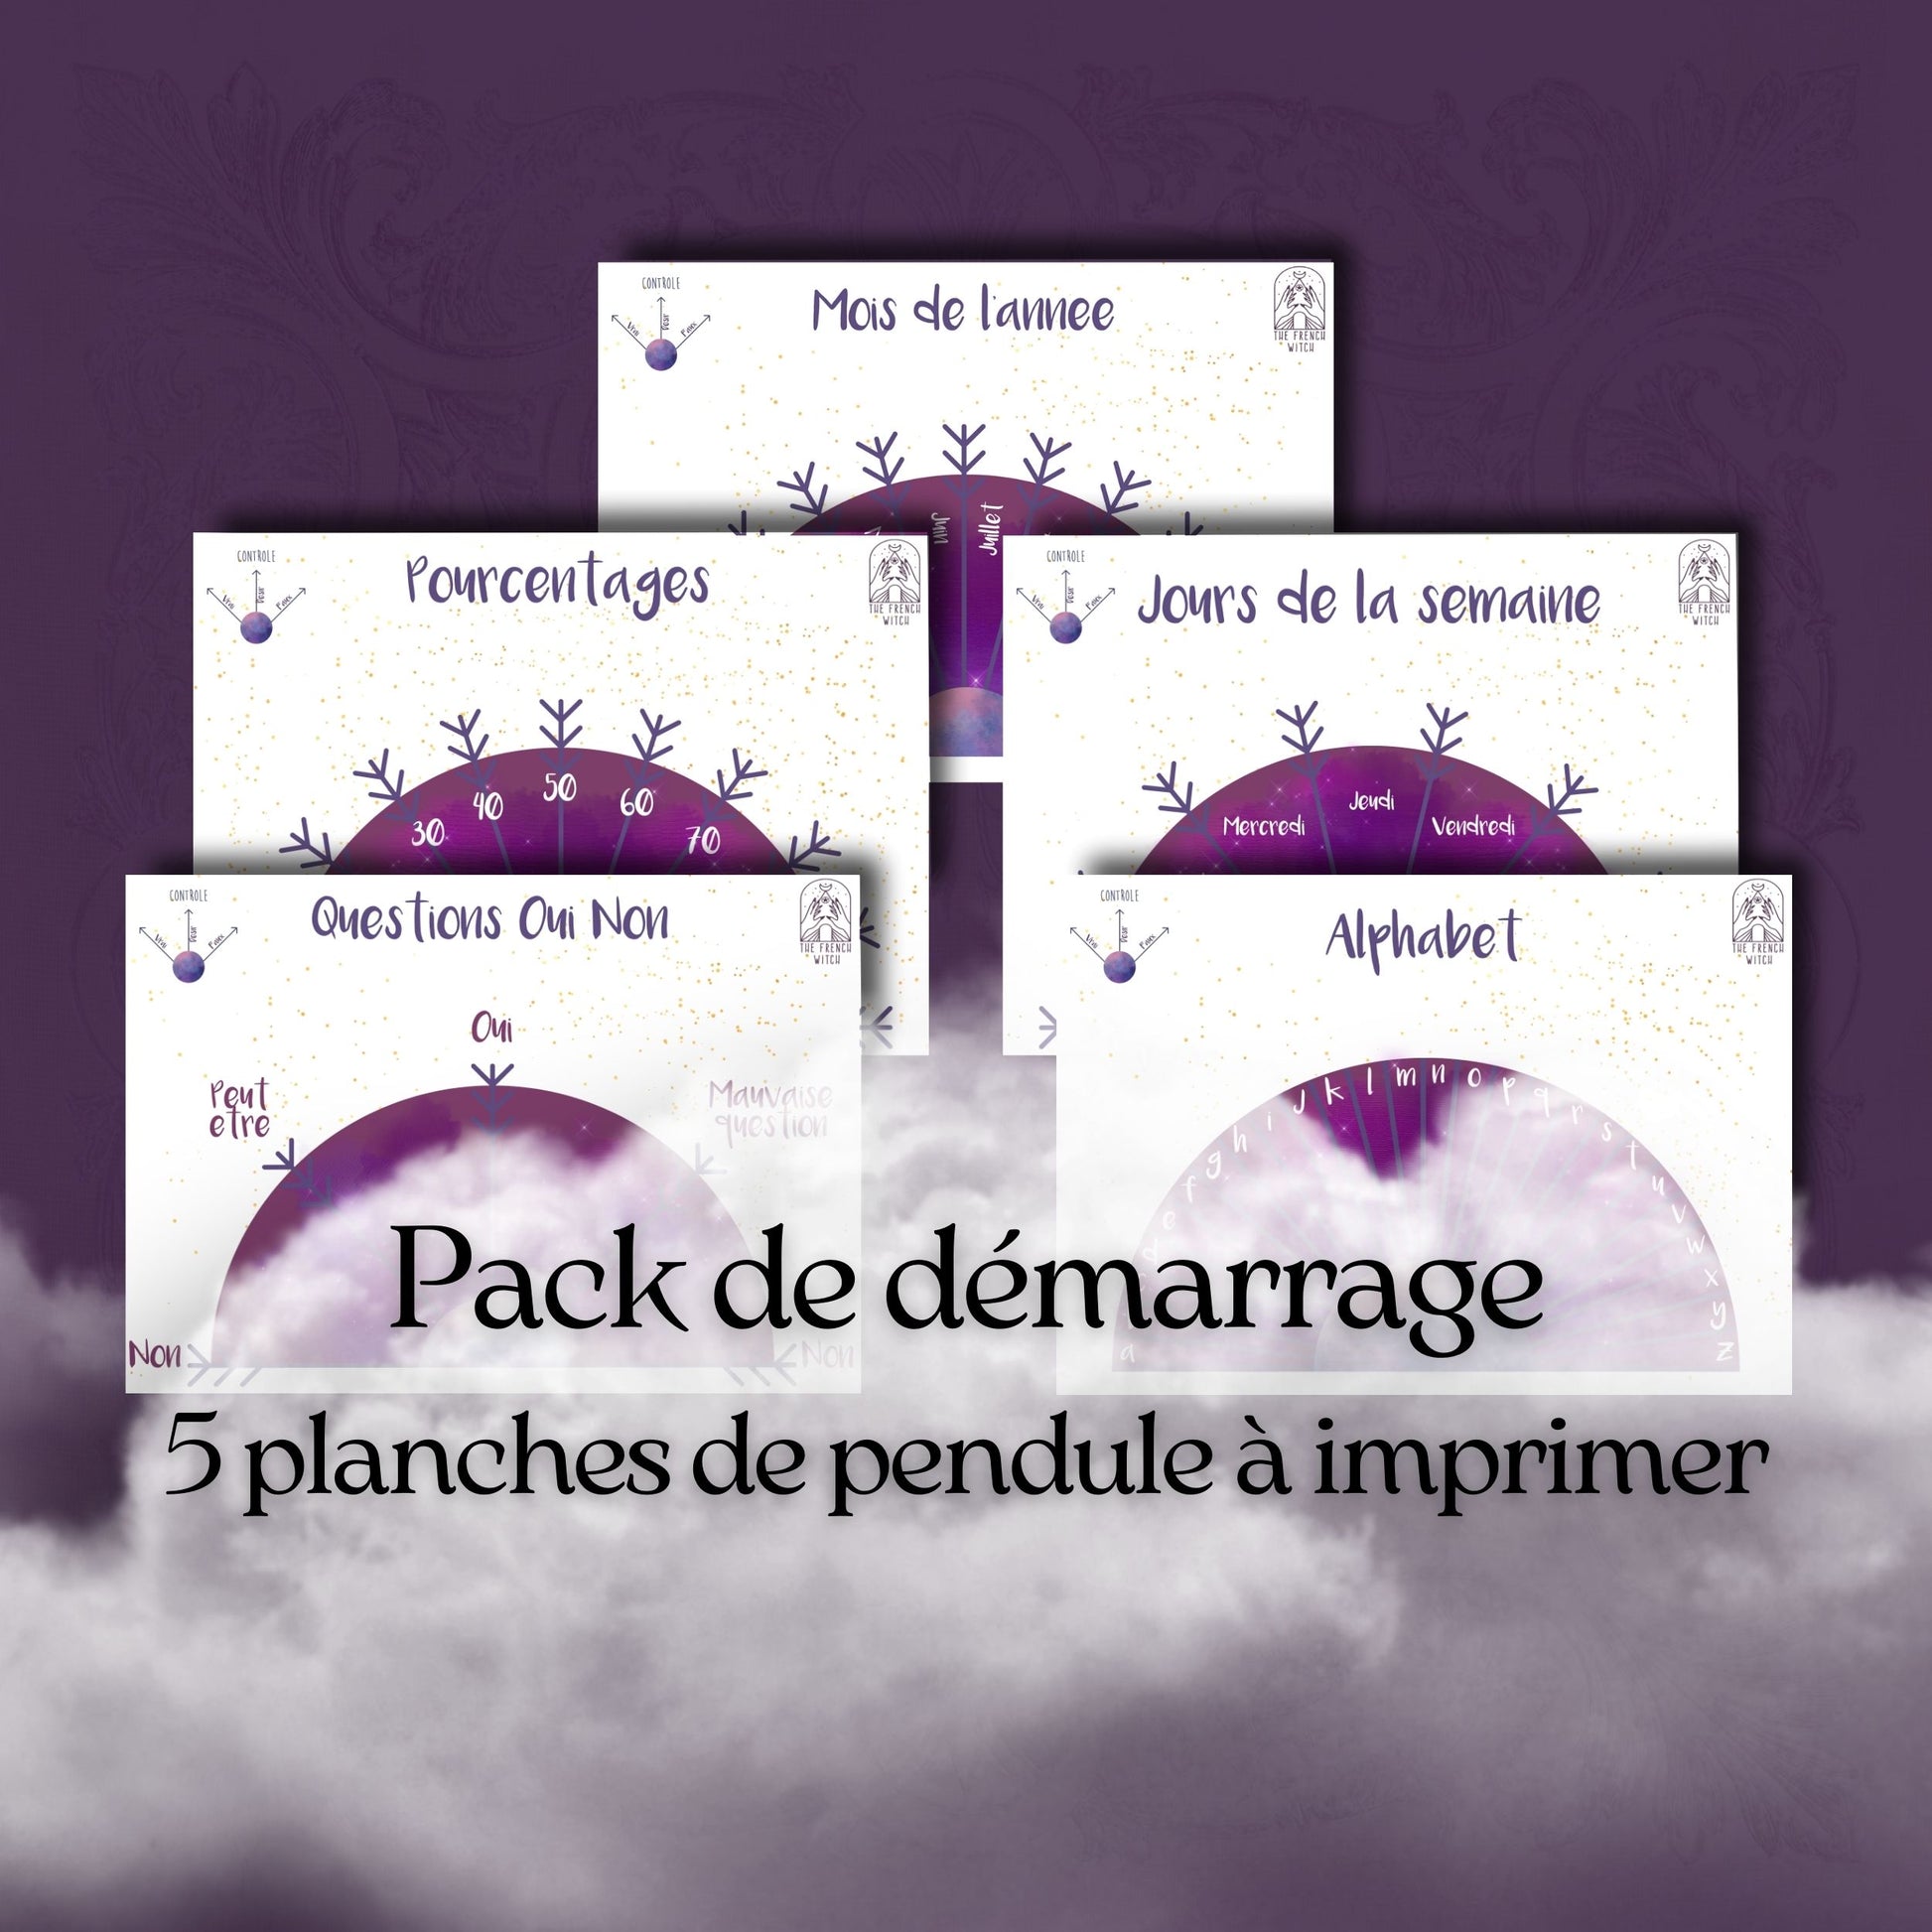 5 planches de pendule à imprimer pack de demarrage langue française PDF pour divination radiesthésie